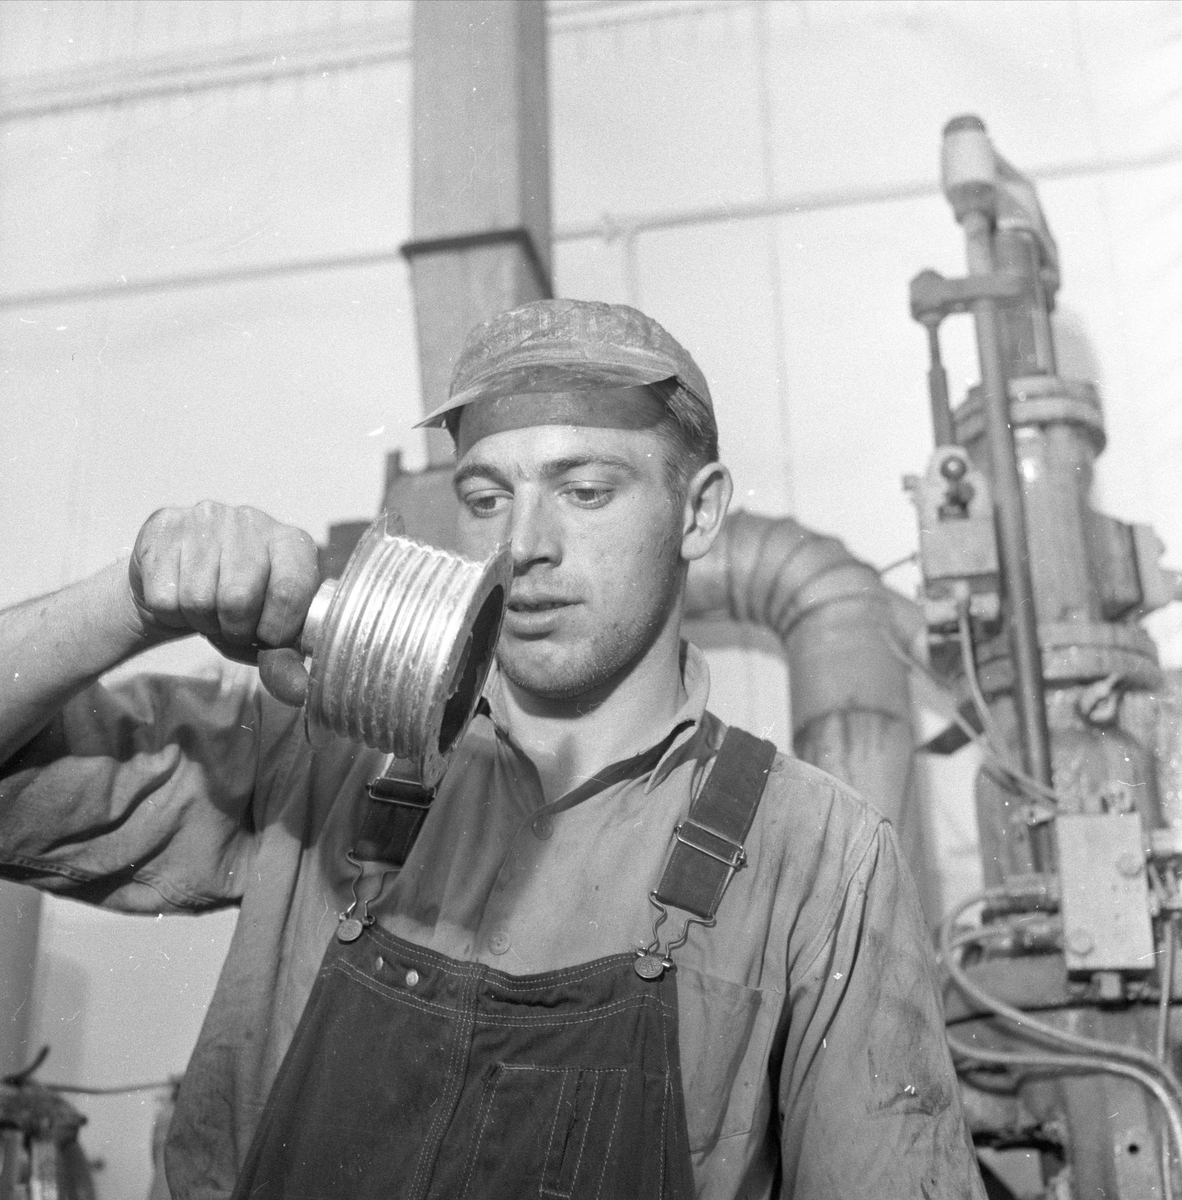 Sandnes, 01.04.1957, DBS sykkelfabrikk, produksjon, fabrikkhaller.